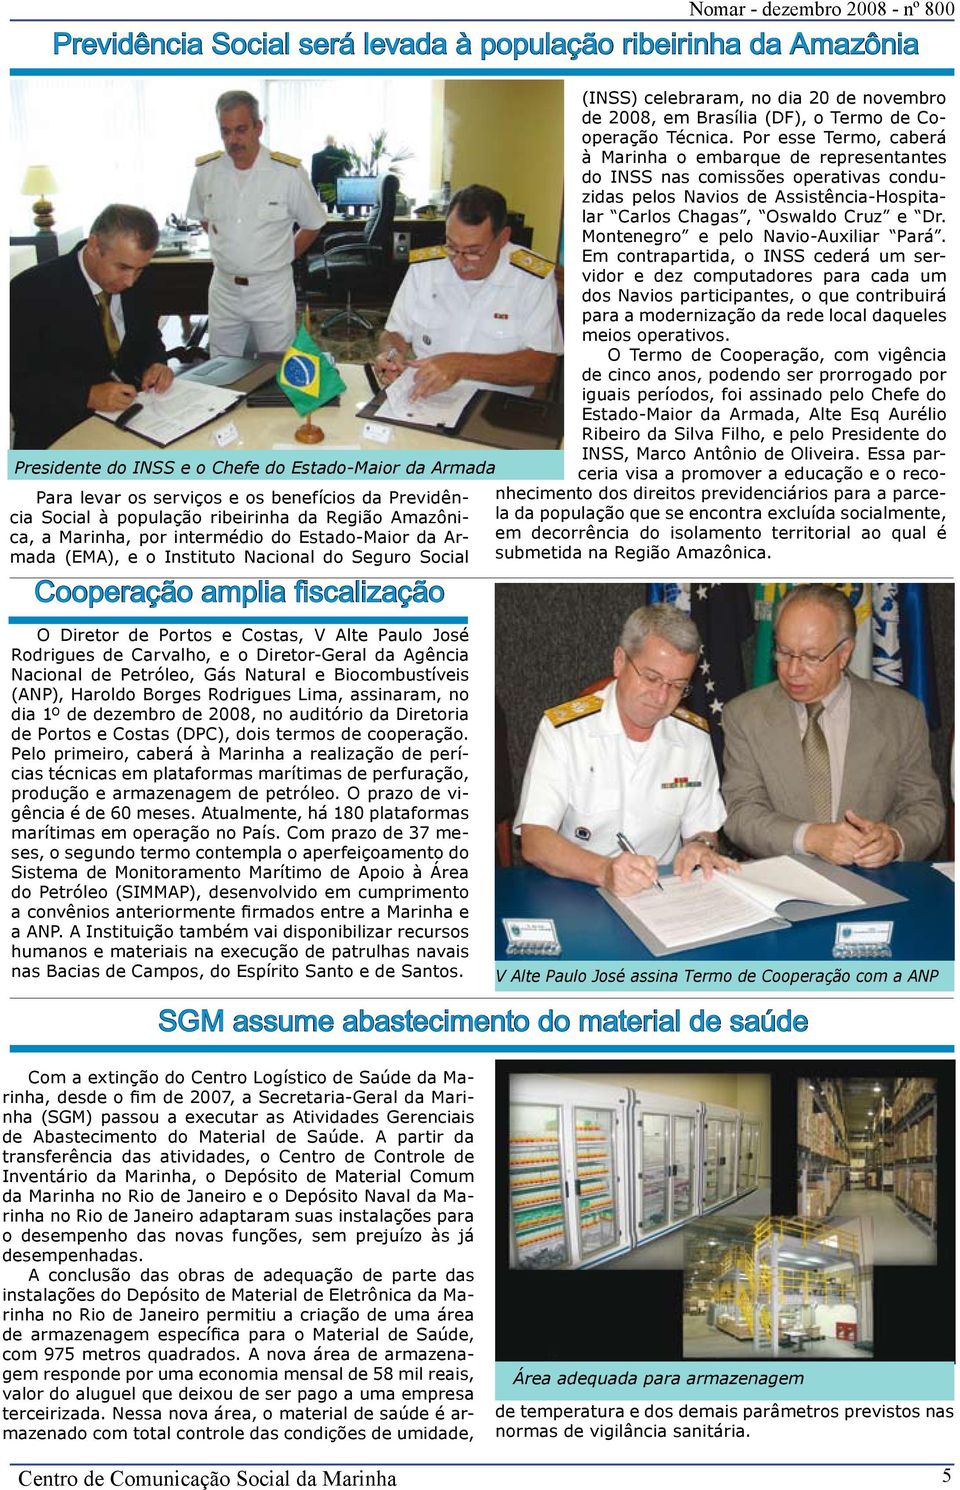 Paulo José Rodrigues de Carvalho, e o Diretor-Geral da Agência Nacional de Petróleo, Gás Natural e Biocombustíveis (ANP), Haroldo Borges Rodrigues Lima, assinaram, no dia 1º de dezembro de 2008, no